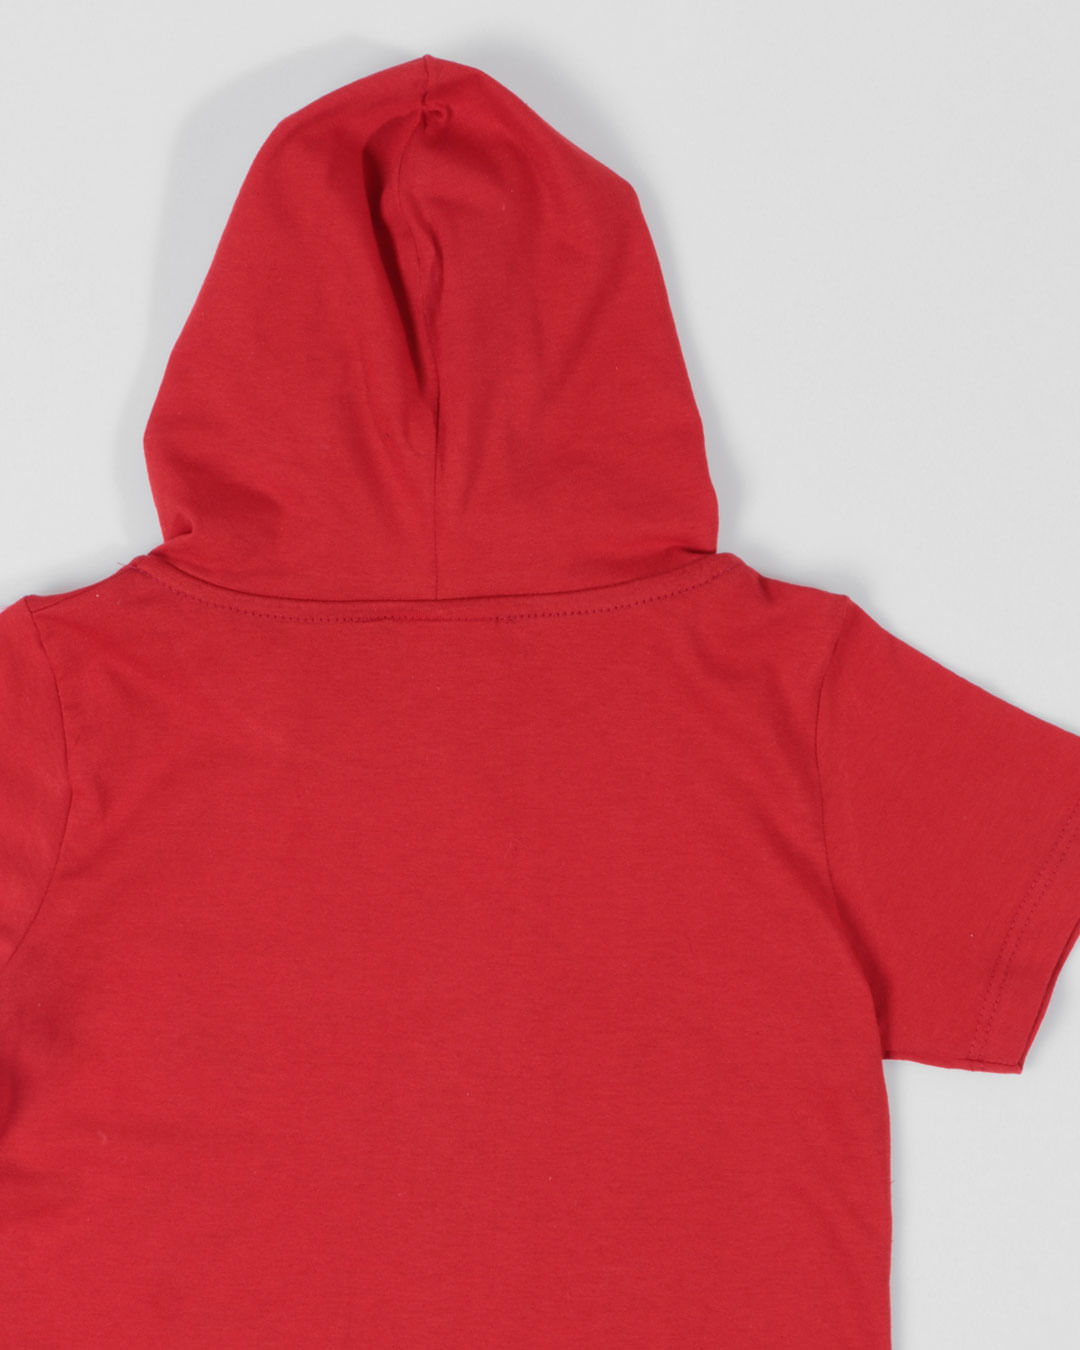 Camiseta-bebe-estampa-Homem-Aranha-vermelho